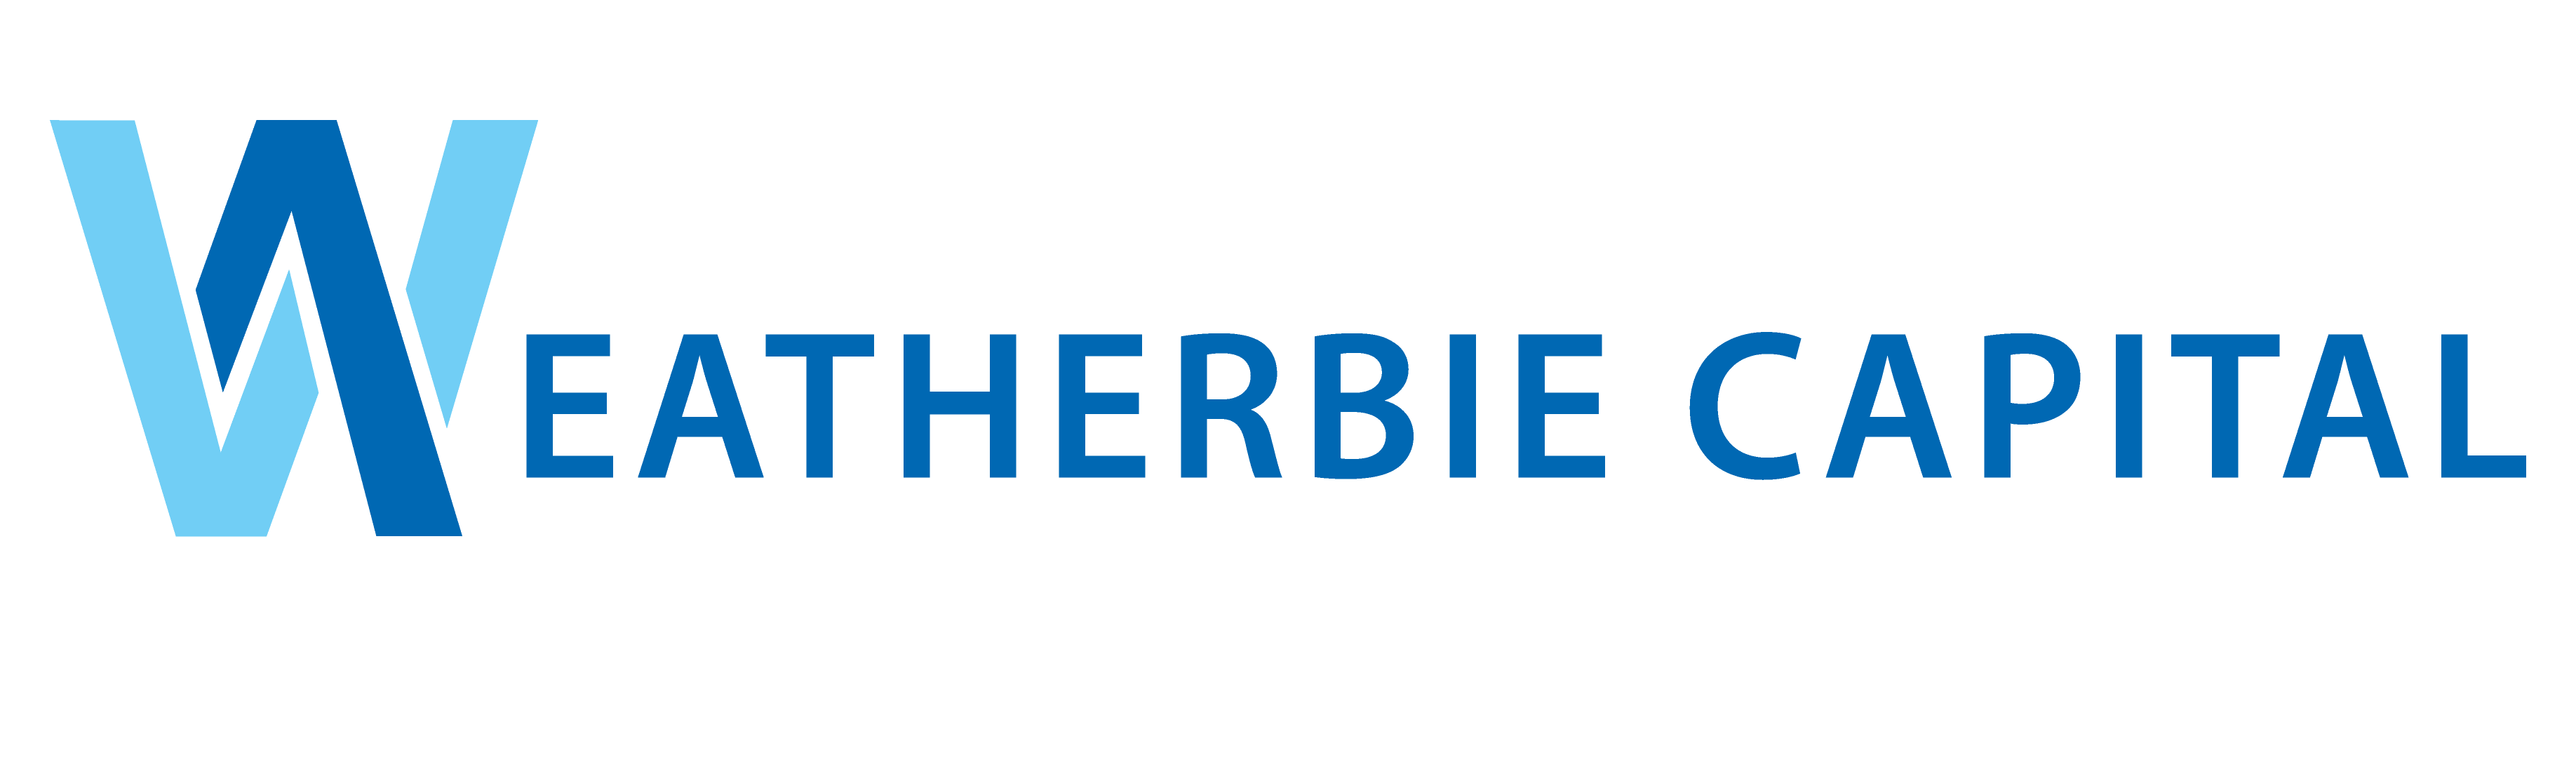 Weatherbie Capital logo